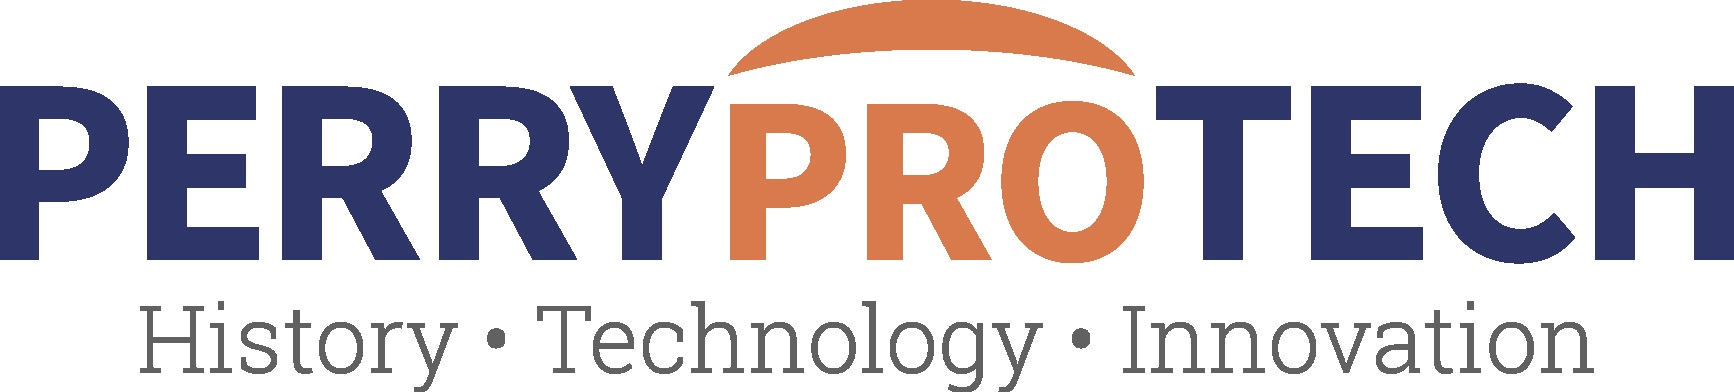 PERRYproTECH logo